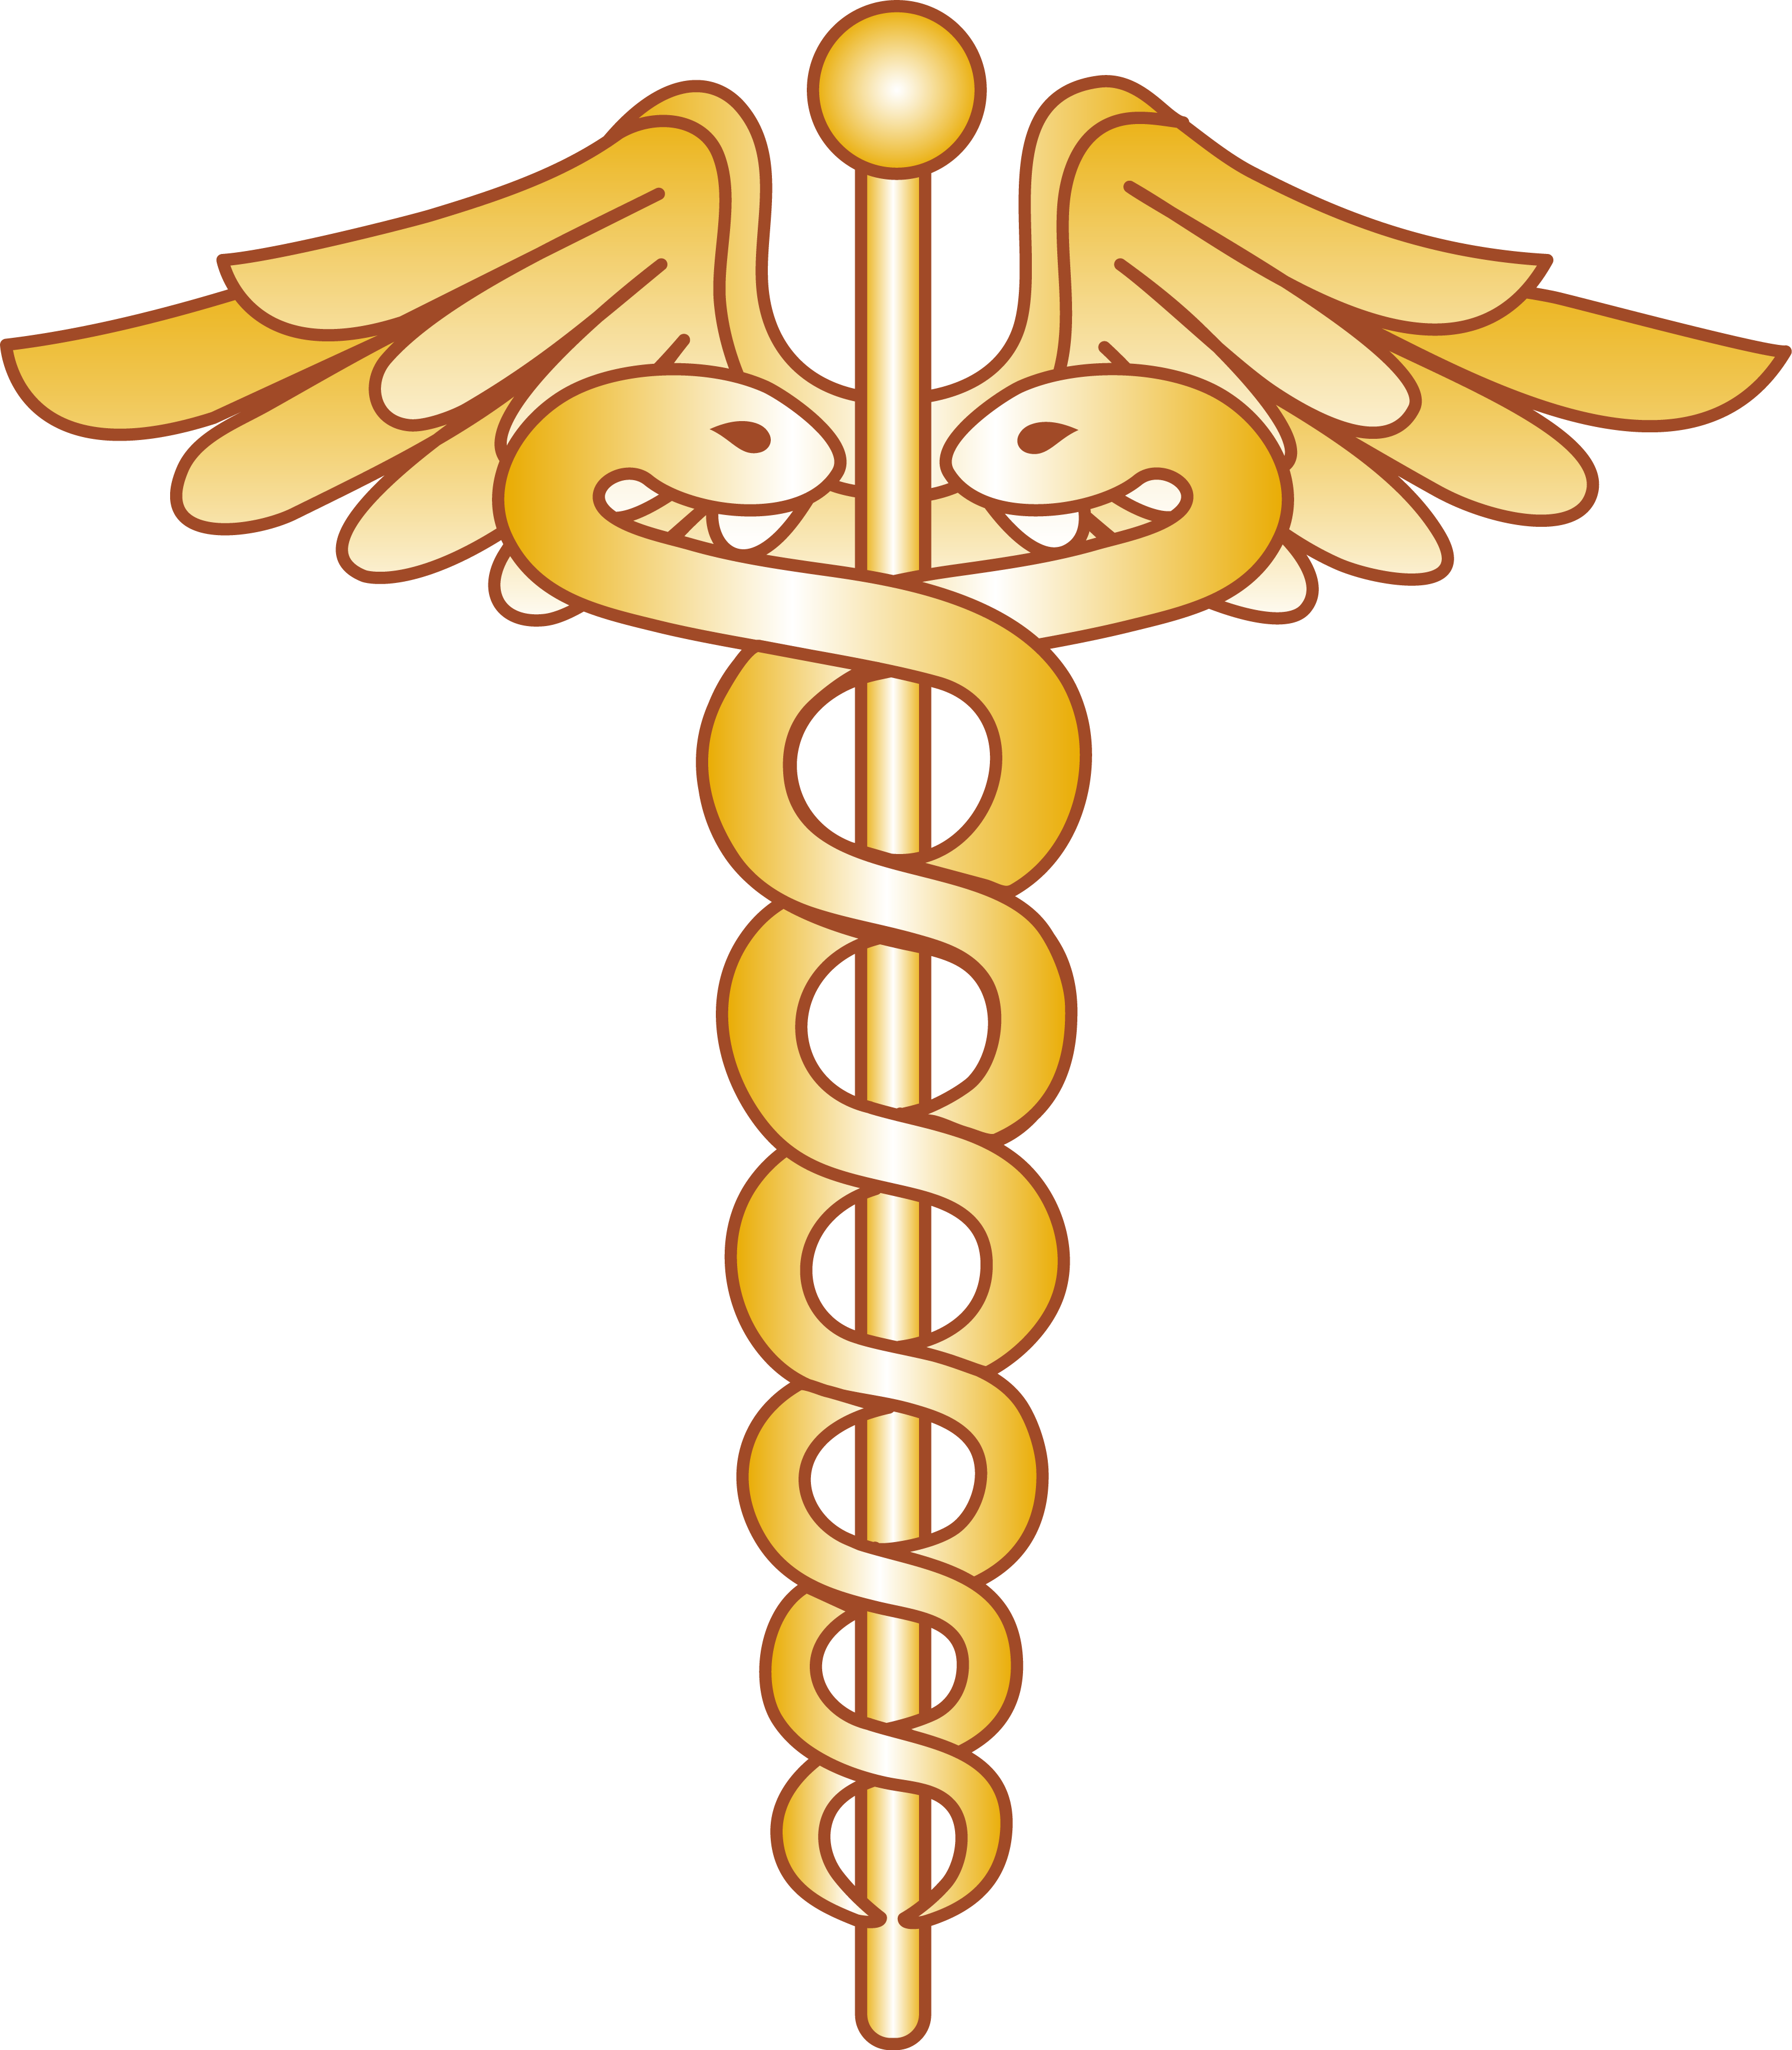 Health medicine snake symbol. Veterinarian clipart logo